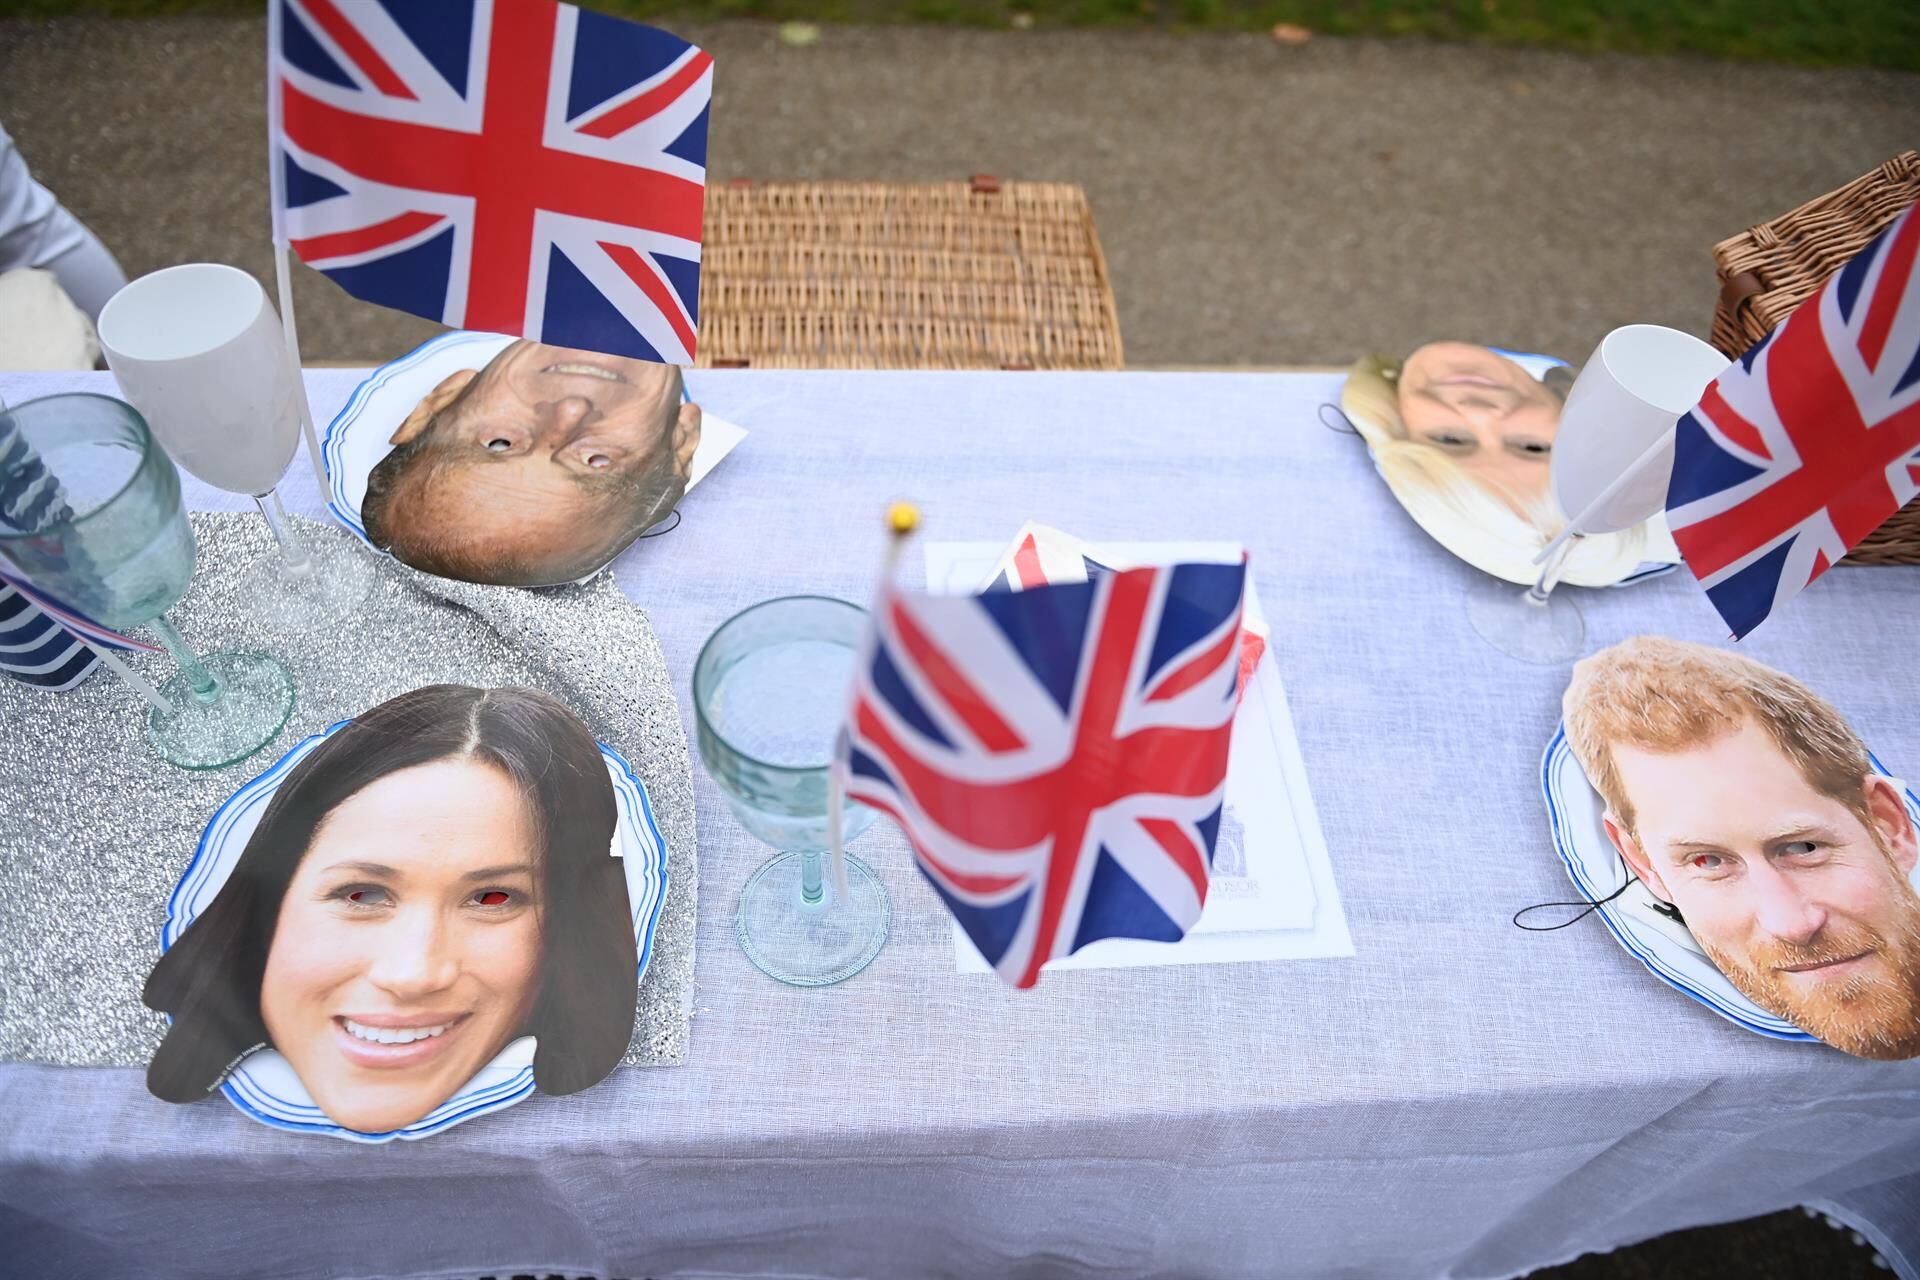 Máscaras que representan a los miembros de la realeza británica se muestran en una mesa mientras la gente disfruta de un picnic mientras participan en El Gran Almuerzo en el Largo Paseo durante las celebraciones del Jubileo de Platino de la Reina Isabel II de Gran Bretaña, en Windsor, Gran Bretaña. (Foto: EFE/EPA/NEIL HALL)